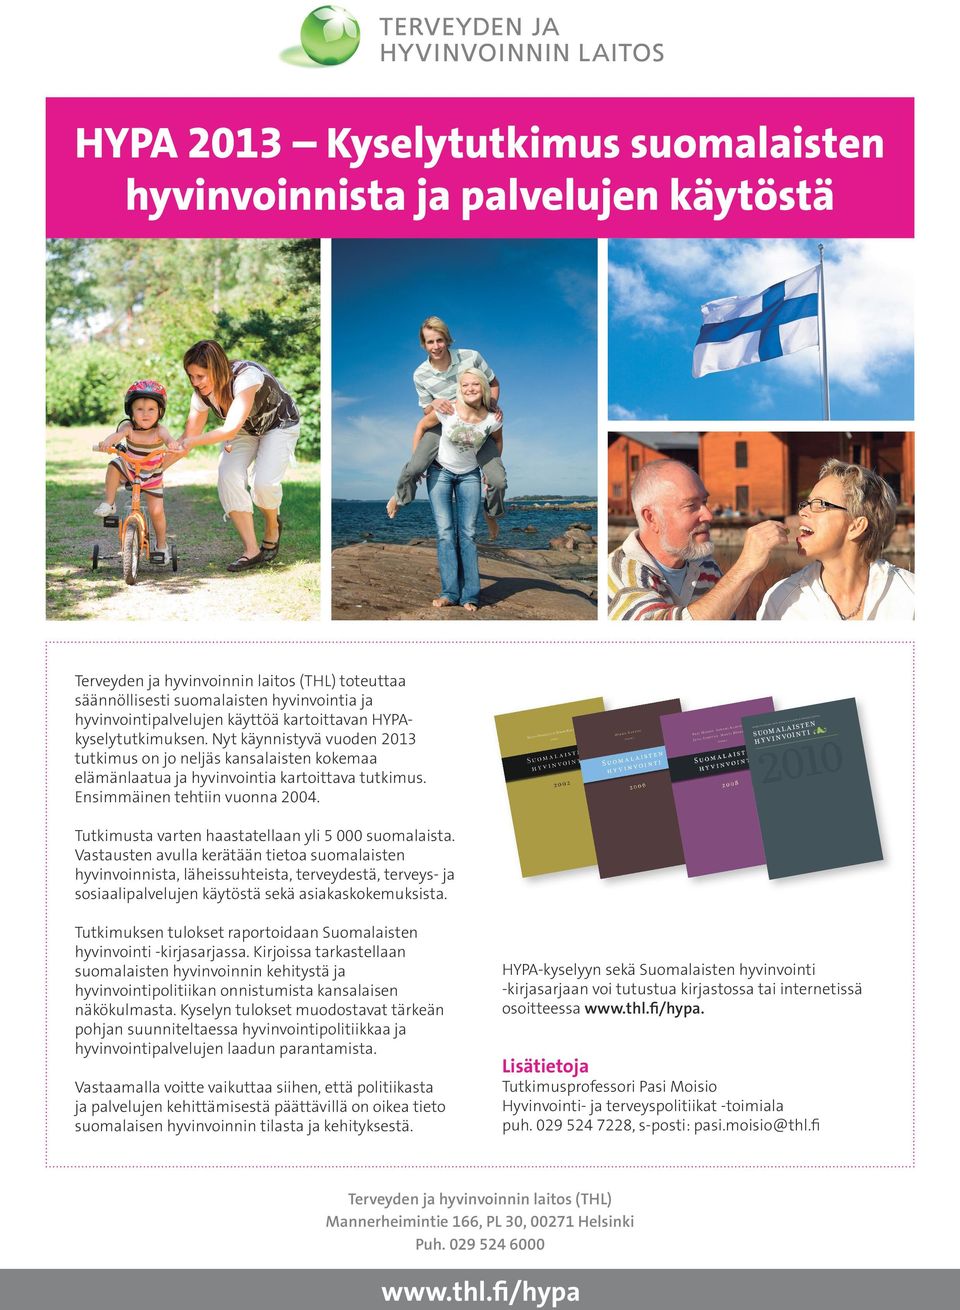 Vastausten avulla kerätään tietoa suomalaisten hyvinvoinnista, läheissuhteista, terveydestä, terveys- ja sosiaalipalvelujen käytöstä sekä asiakaskokemuksista.